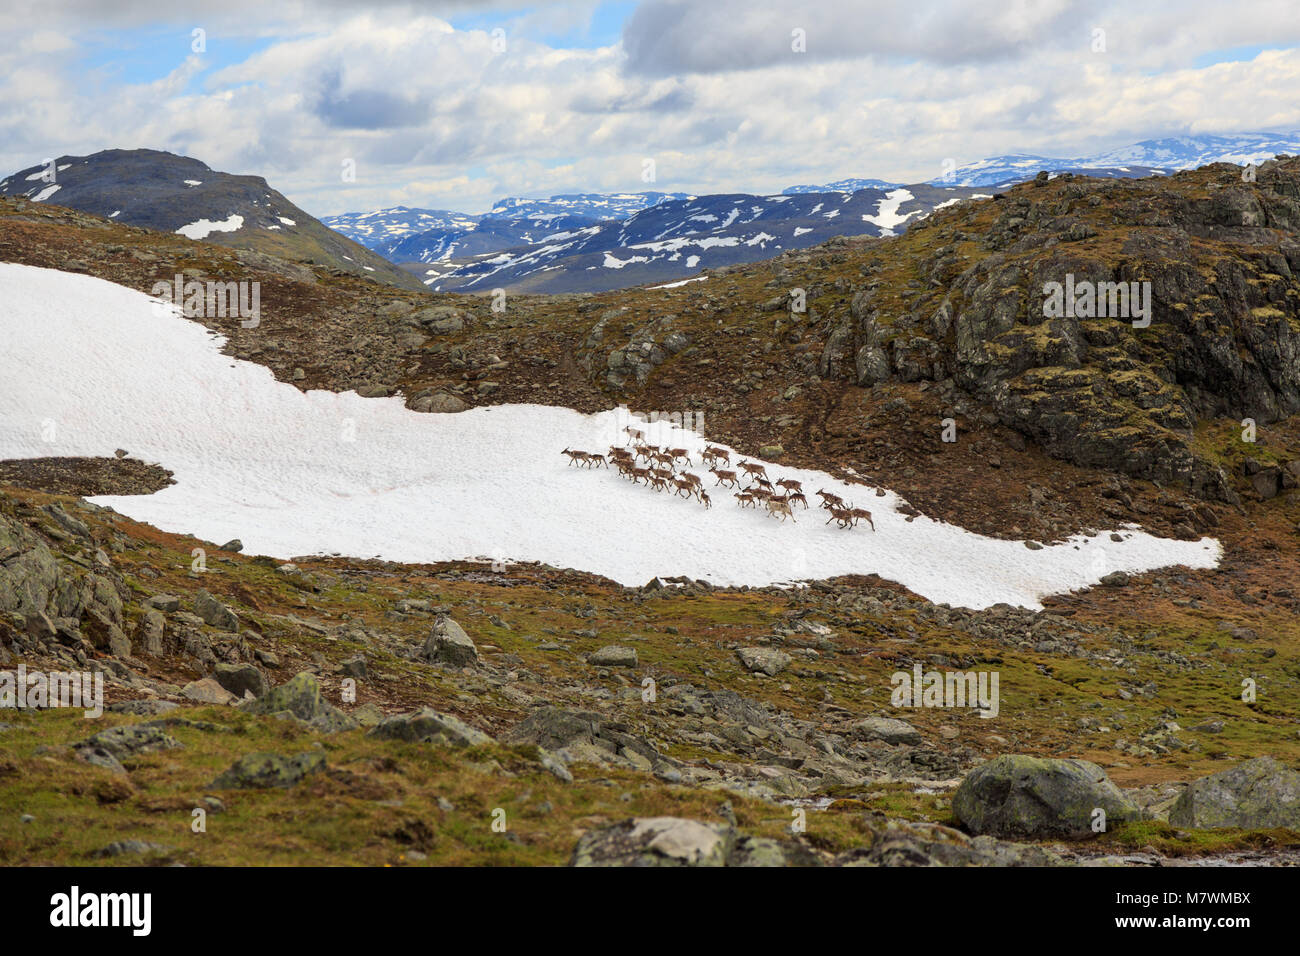 Troupeau de rennes à travers une montagne couverte de neige par endroits en Norvège Jotunheimen Banque D'Images